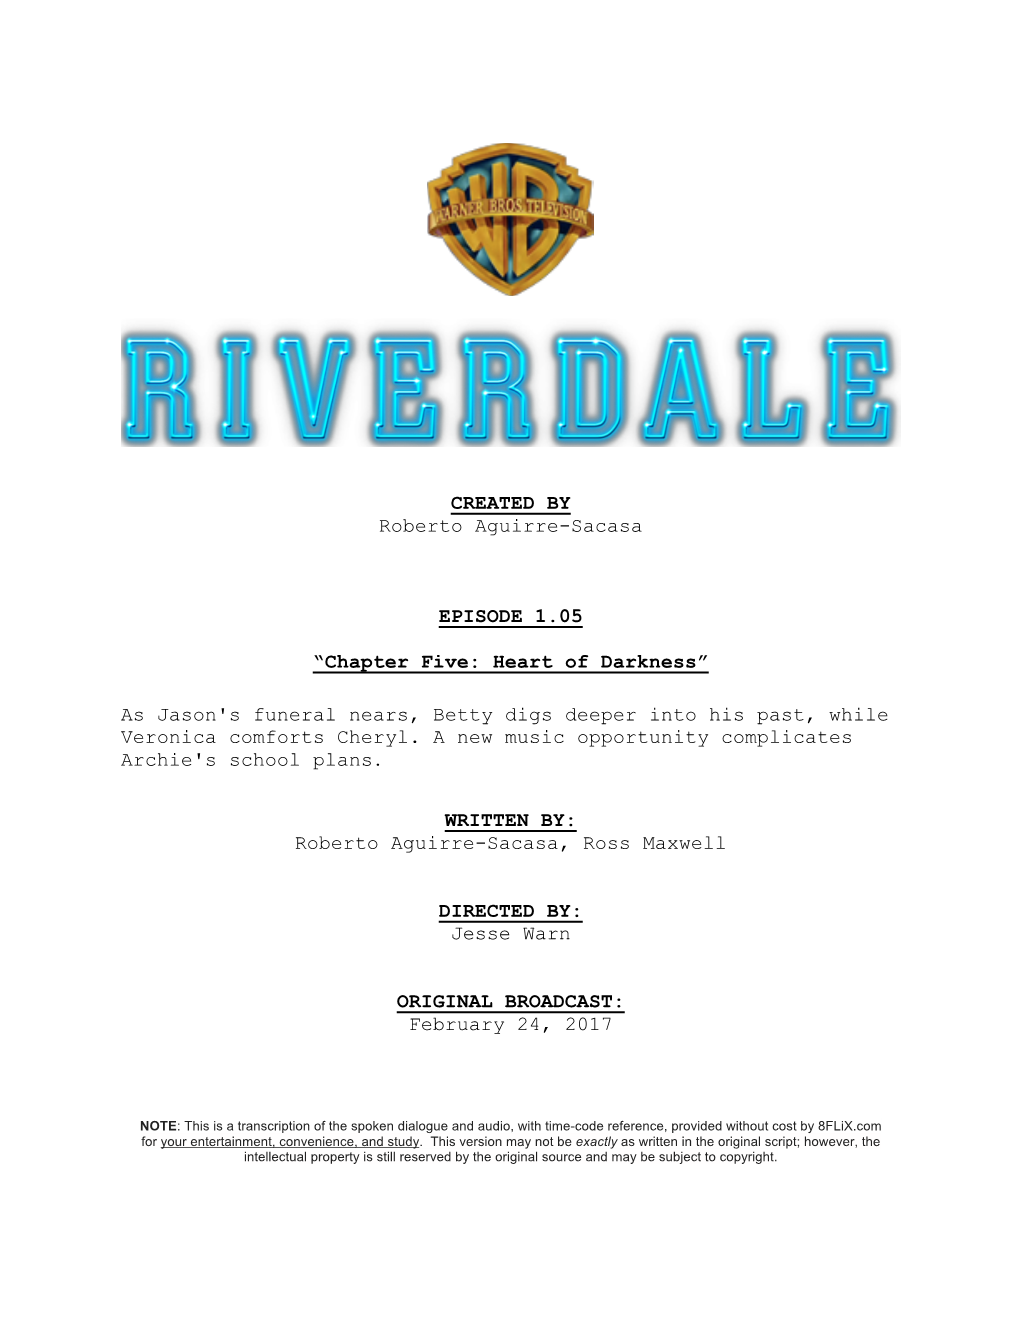 Riverdale | Dialogue Transcript | S1:E5